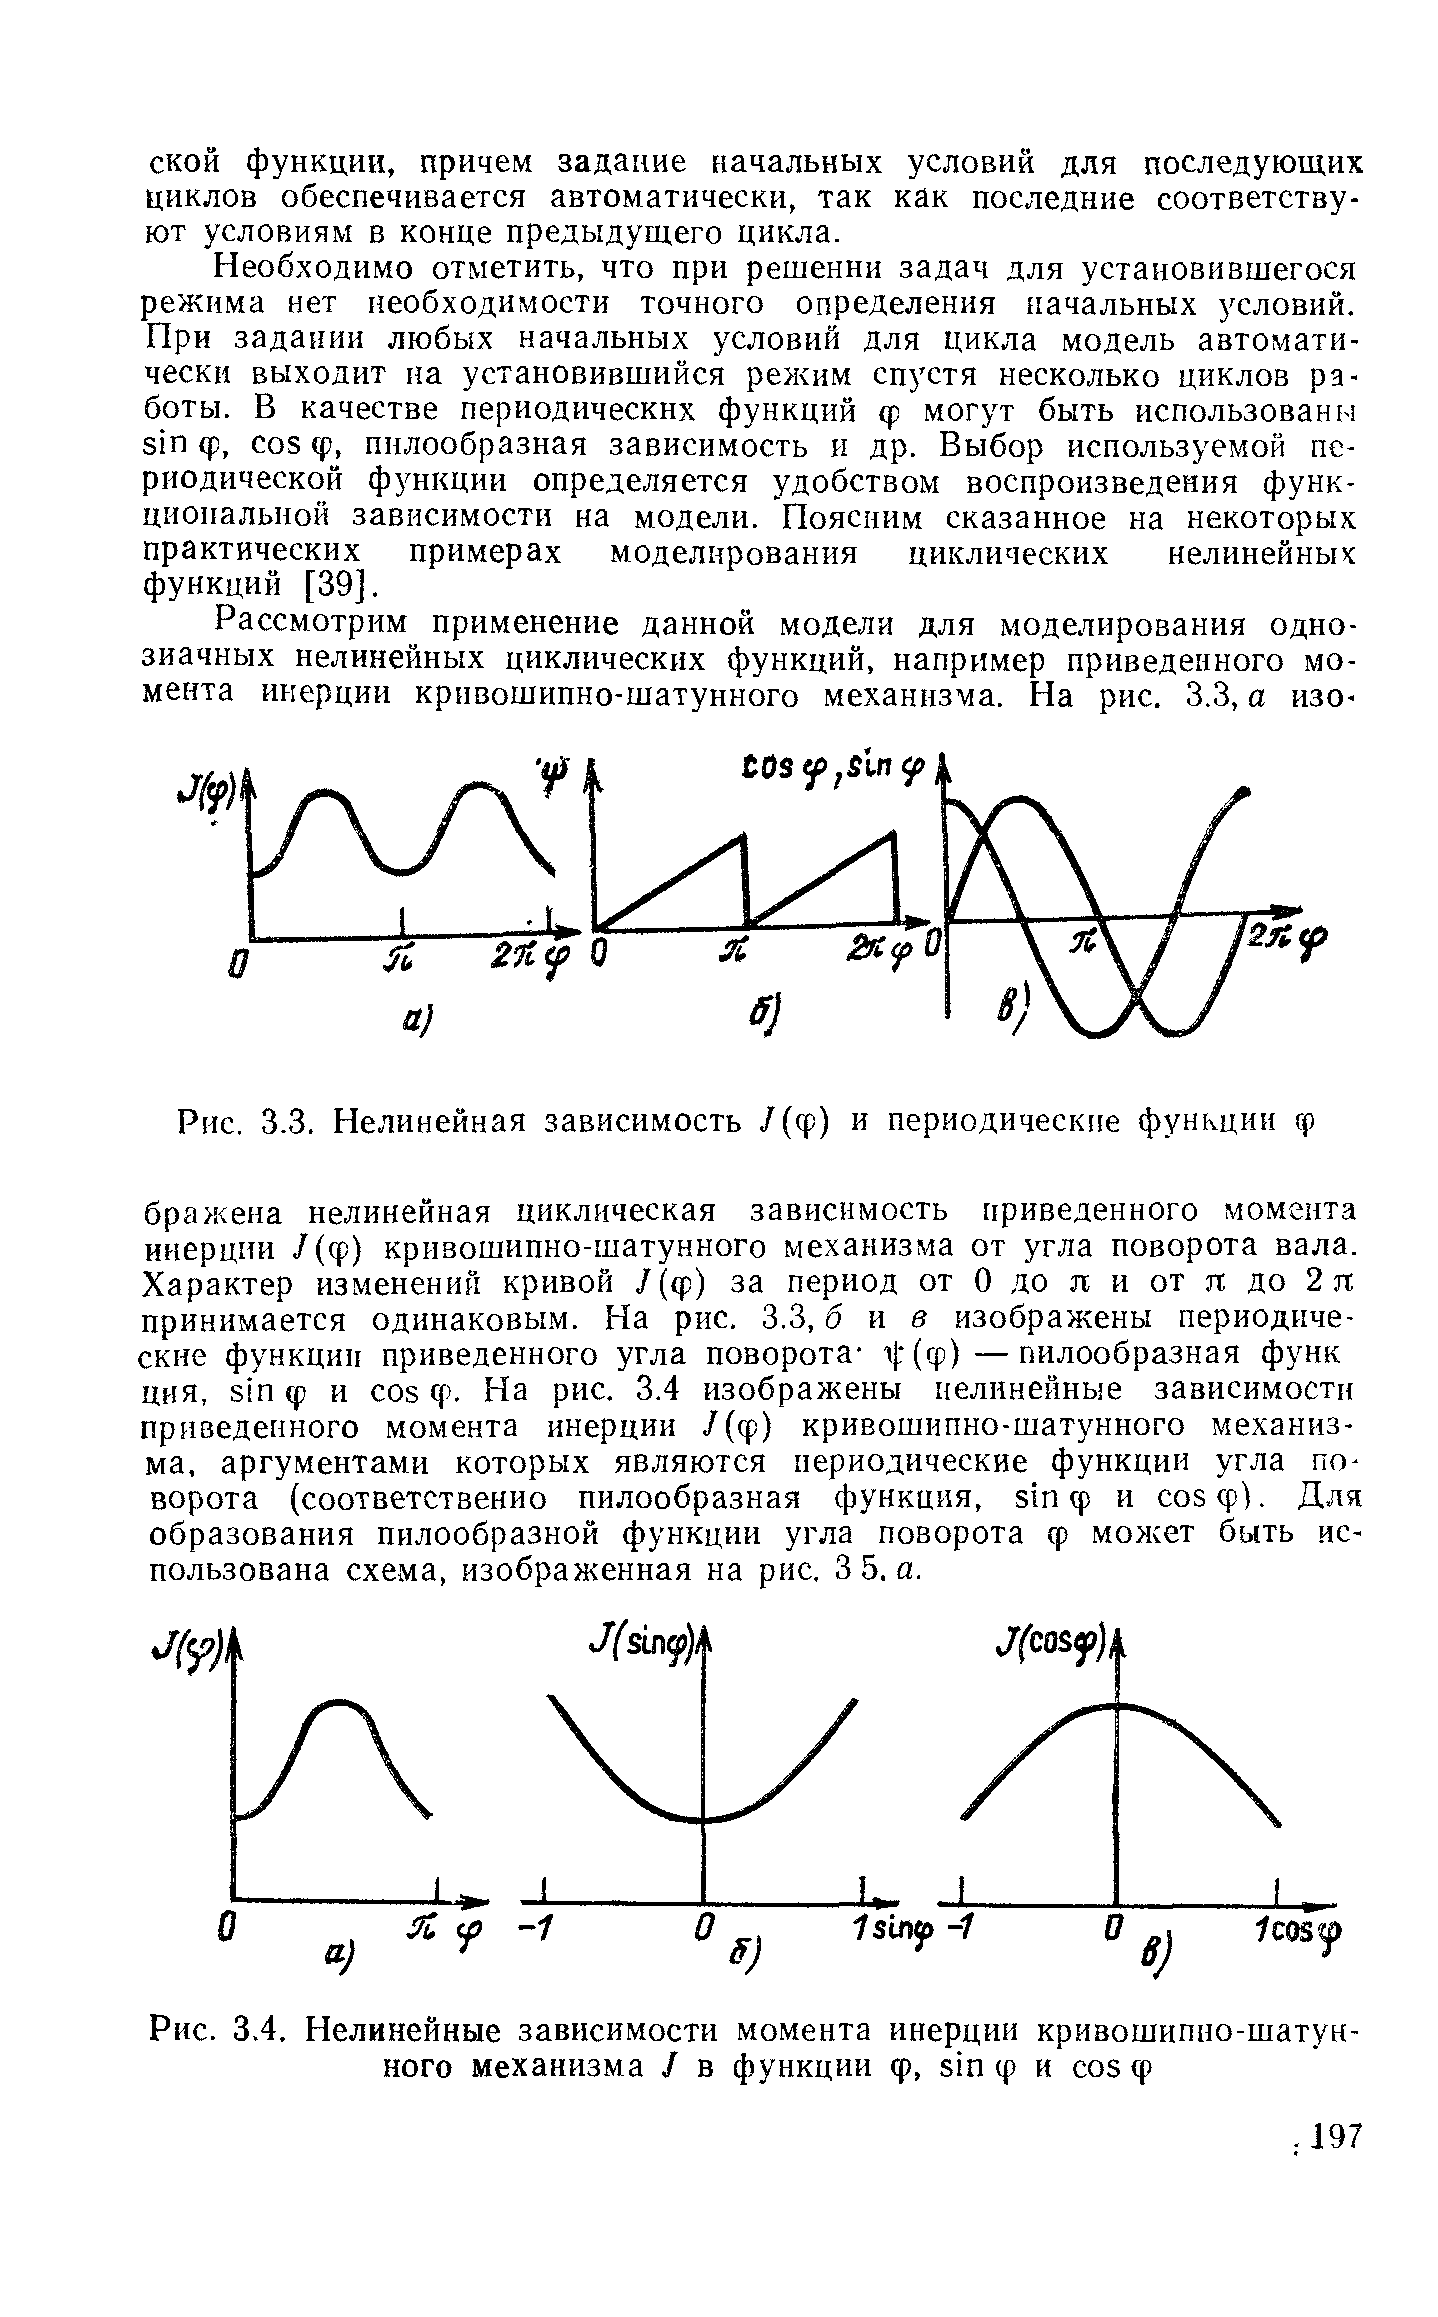 Рис. 3.4. Нелинейные зависимости момента инерции кривошипно-шатунного механизма J в функции ф, sin ф и os ф
